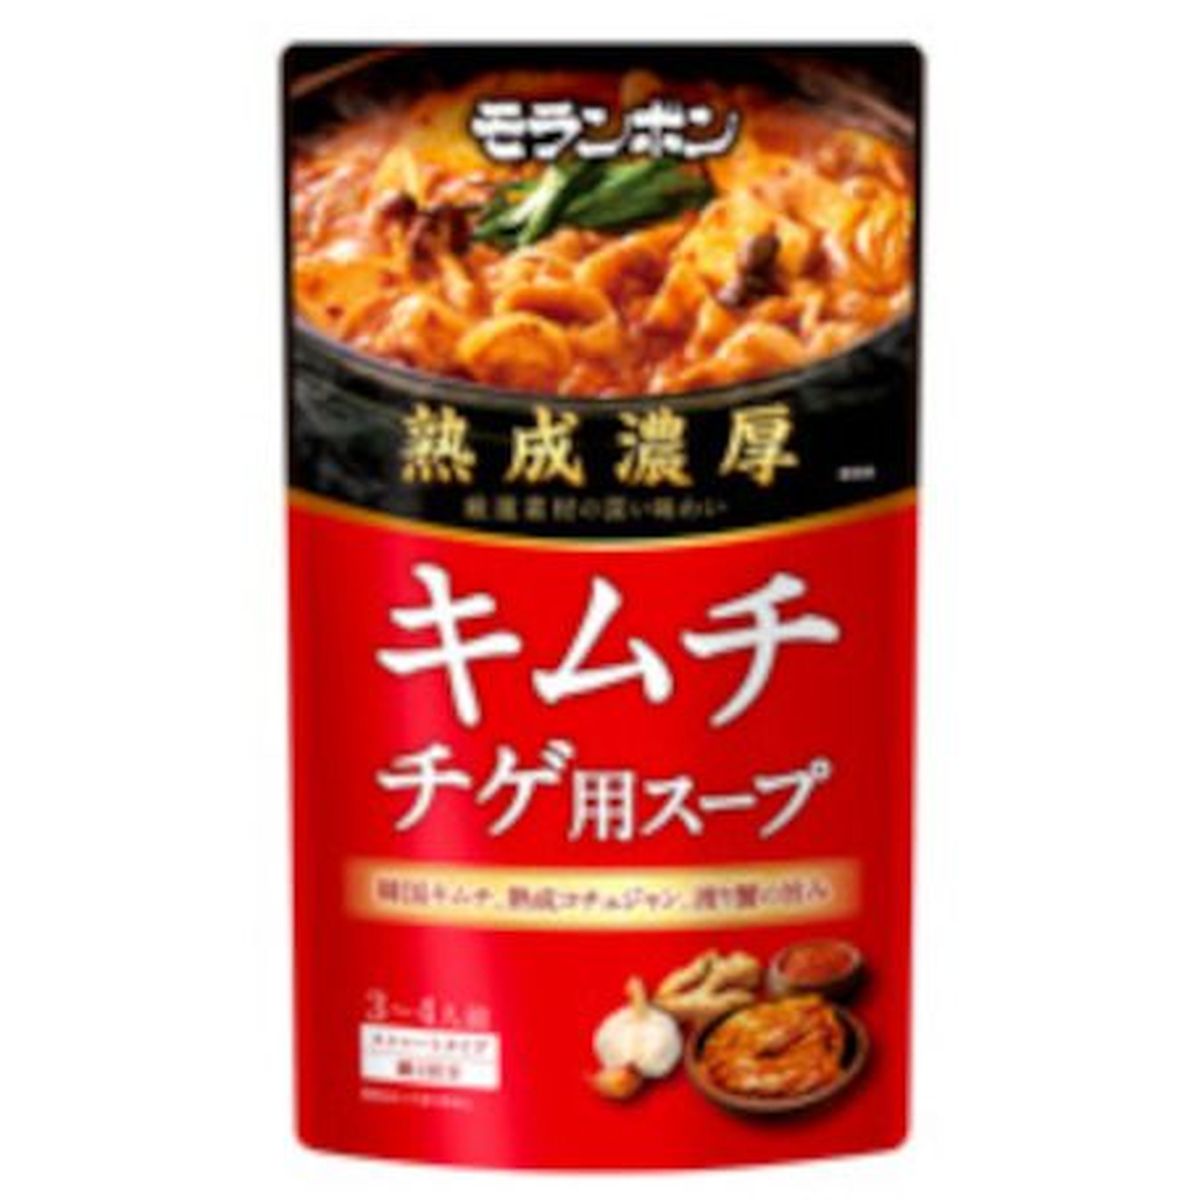 【10個入リ】モランボン 熟成濃厚キムチチゲ用スープ 750g